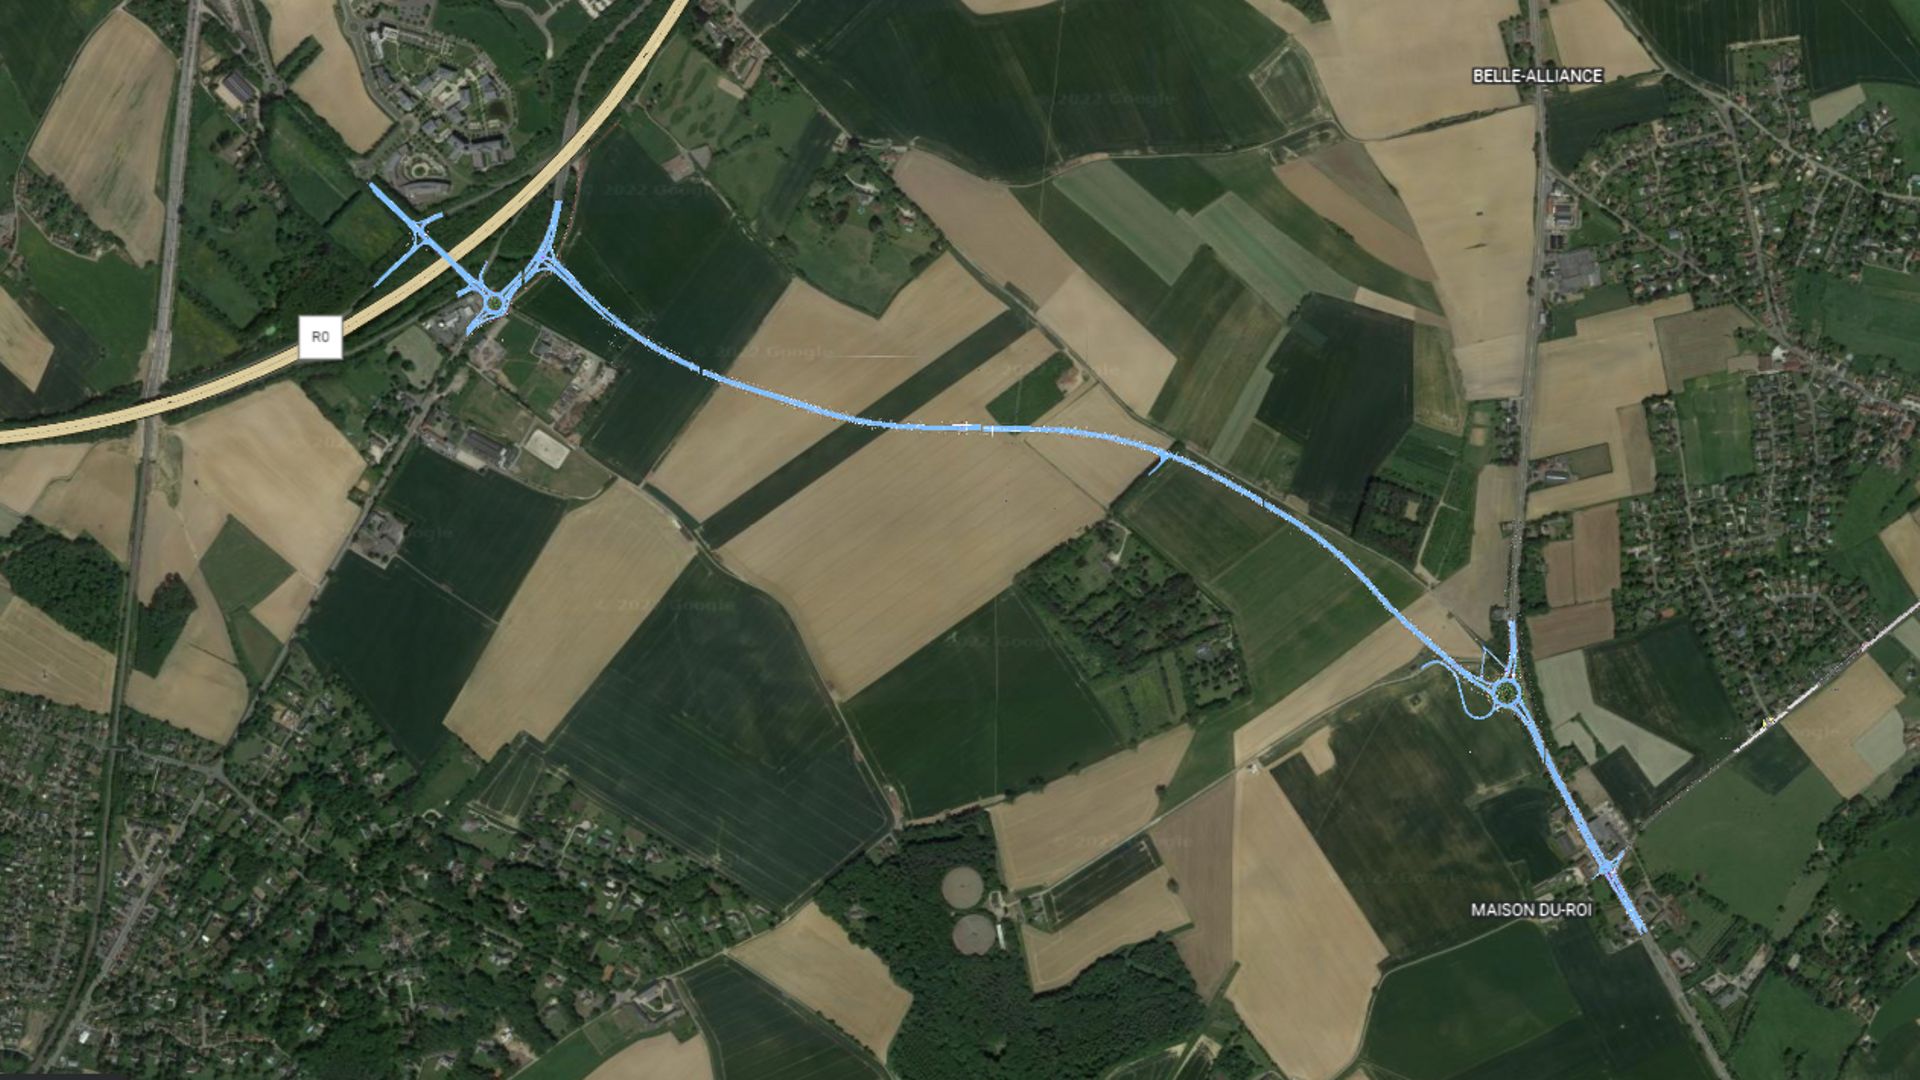 Voici le tracé imaginé par le Service public de Wallonie pour connecter la N27 (à gauche) à la N5 (à droite), au sud de la butte du Lion de Waterloo.